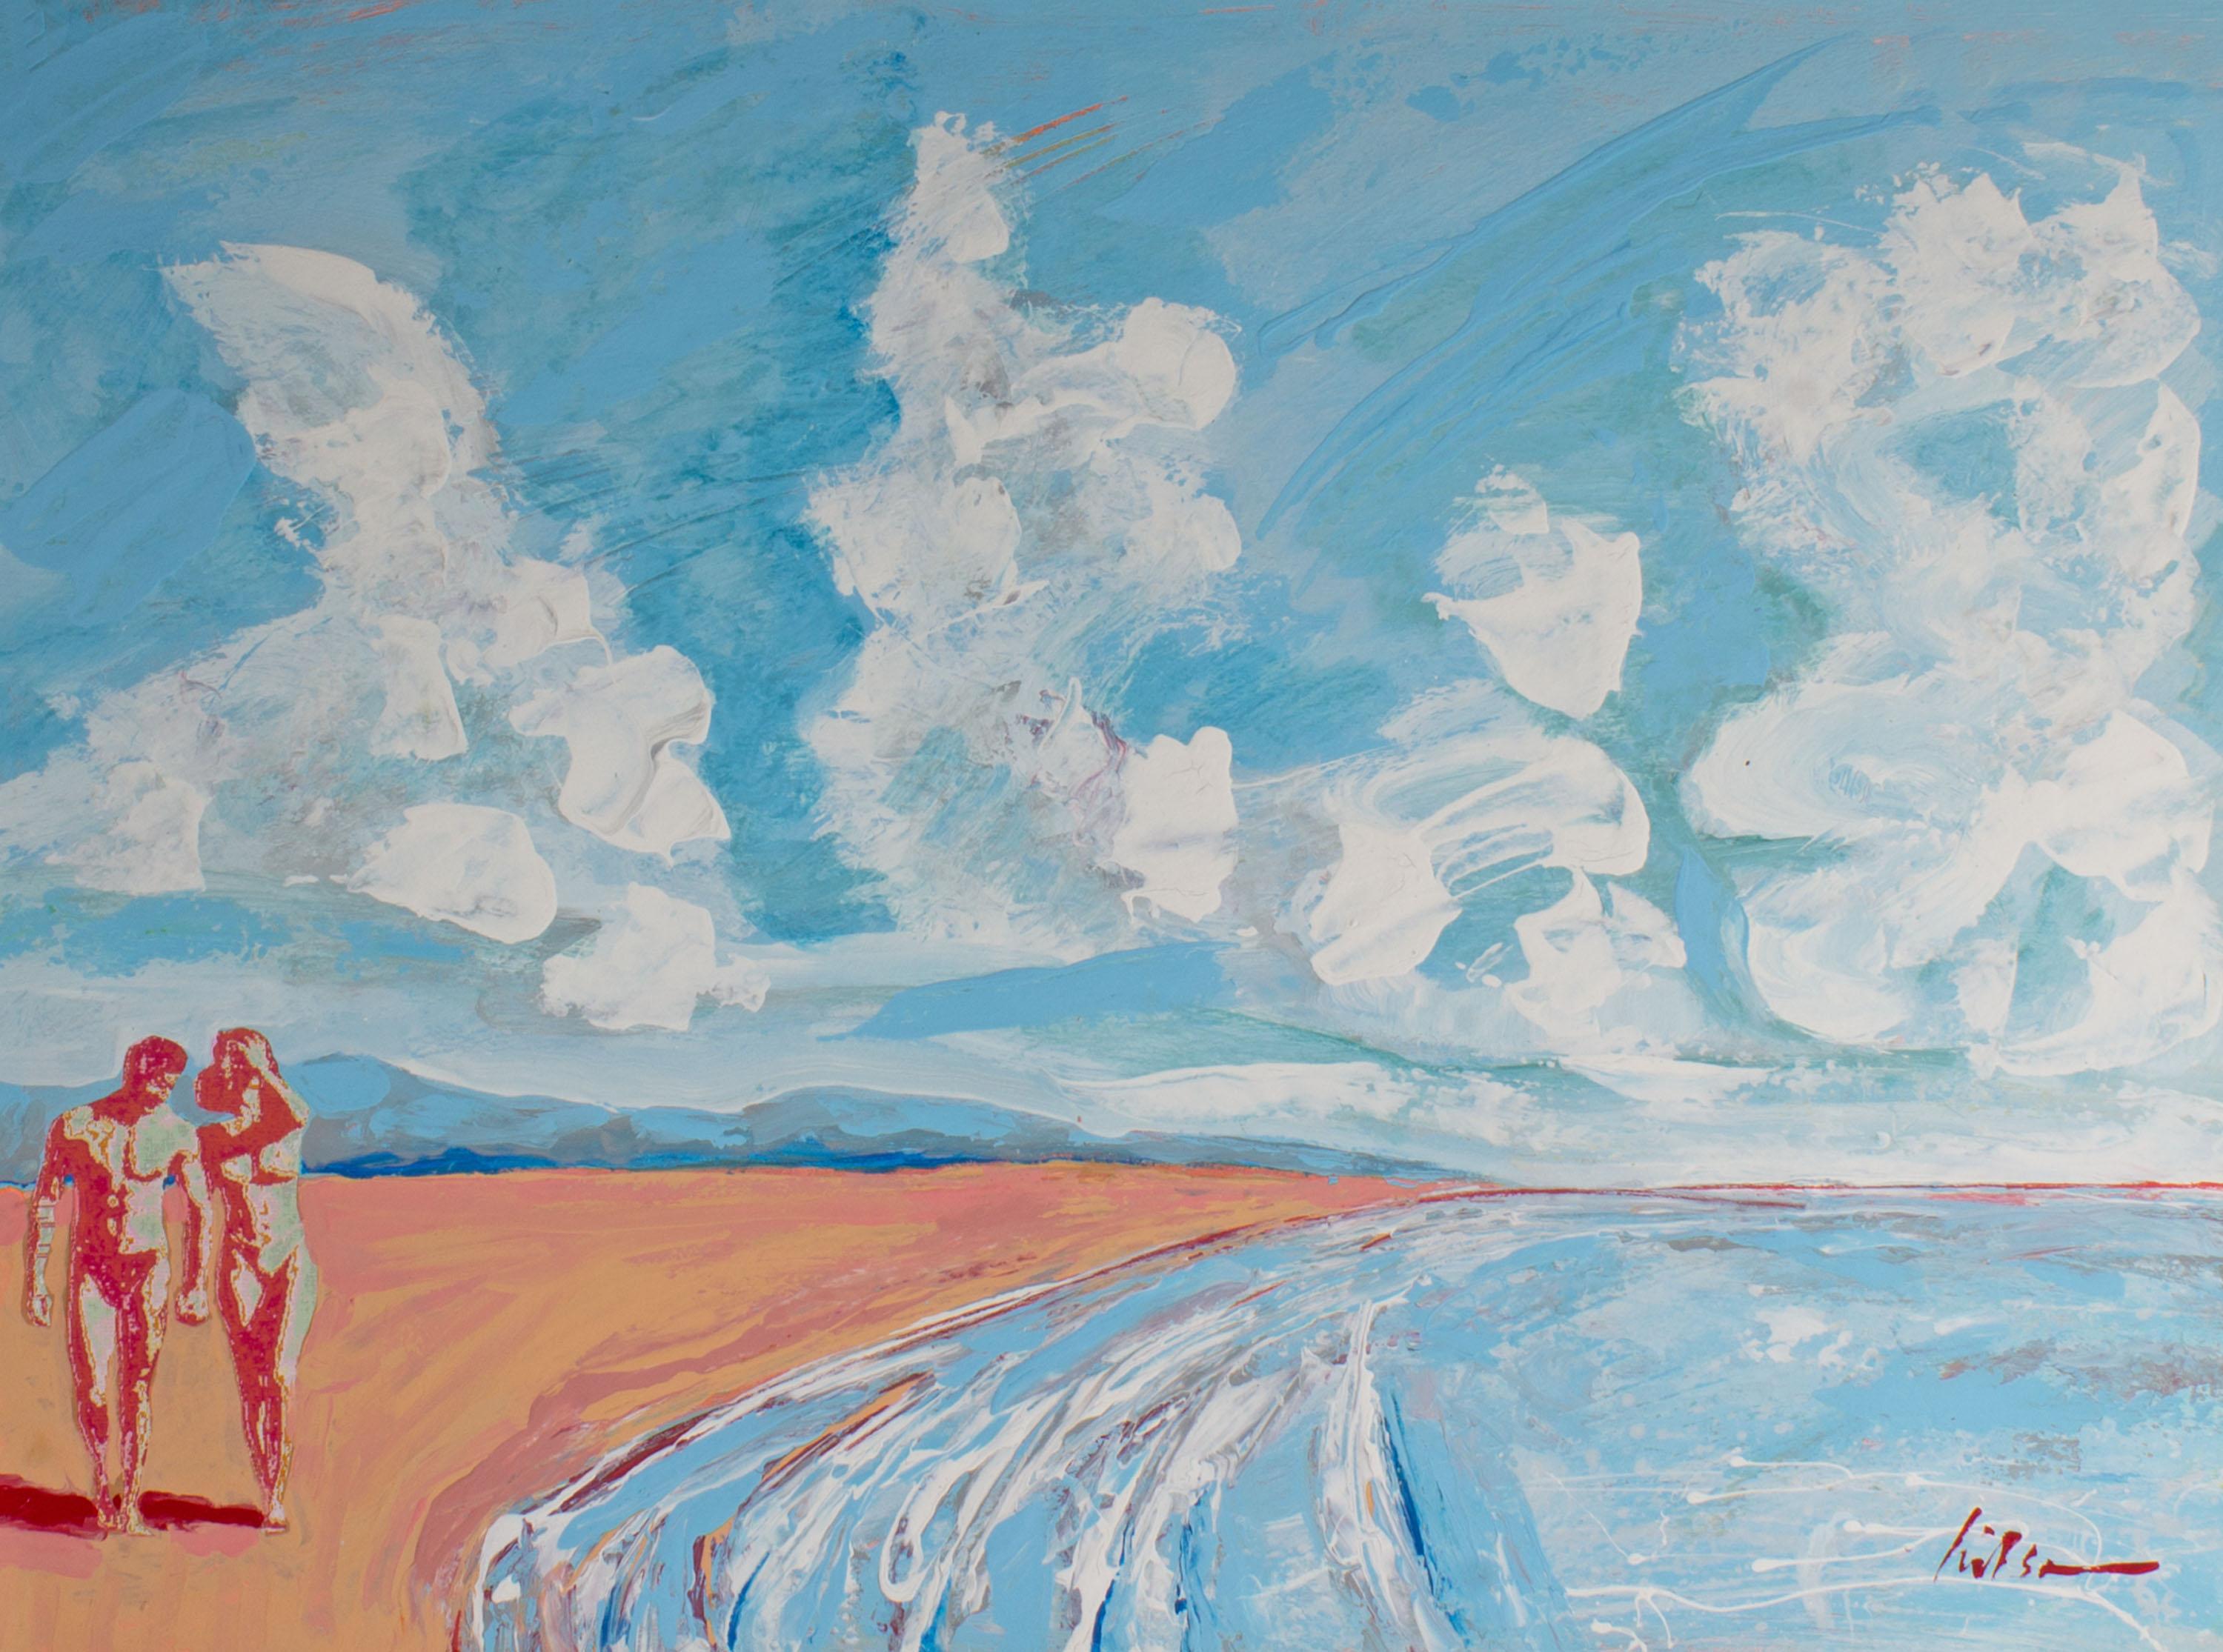 Eine abstrakte Strandlandschaft des amerikanischen Künstlers Harry Hilson (1935-2004) aus den 1990er Jahren in Acryl und als Collage auf Papier. Gestische Linien fügen sich zu einer blauen und rosafarbenen abstrakten Küstenlinie zusammen. Im